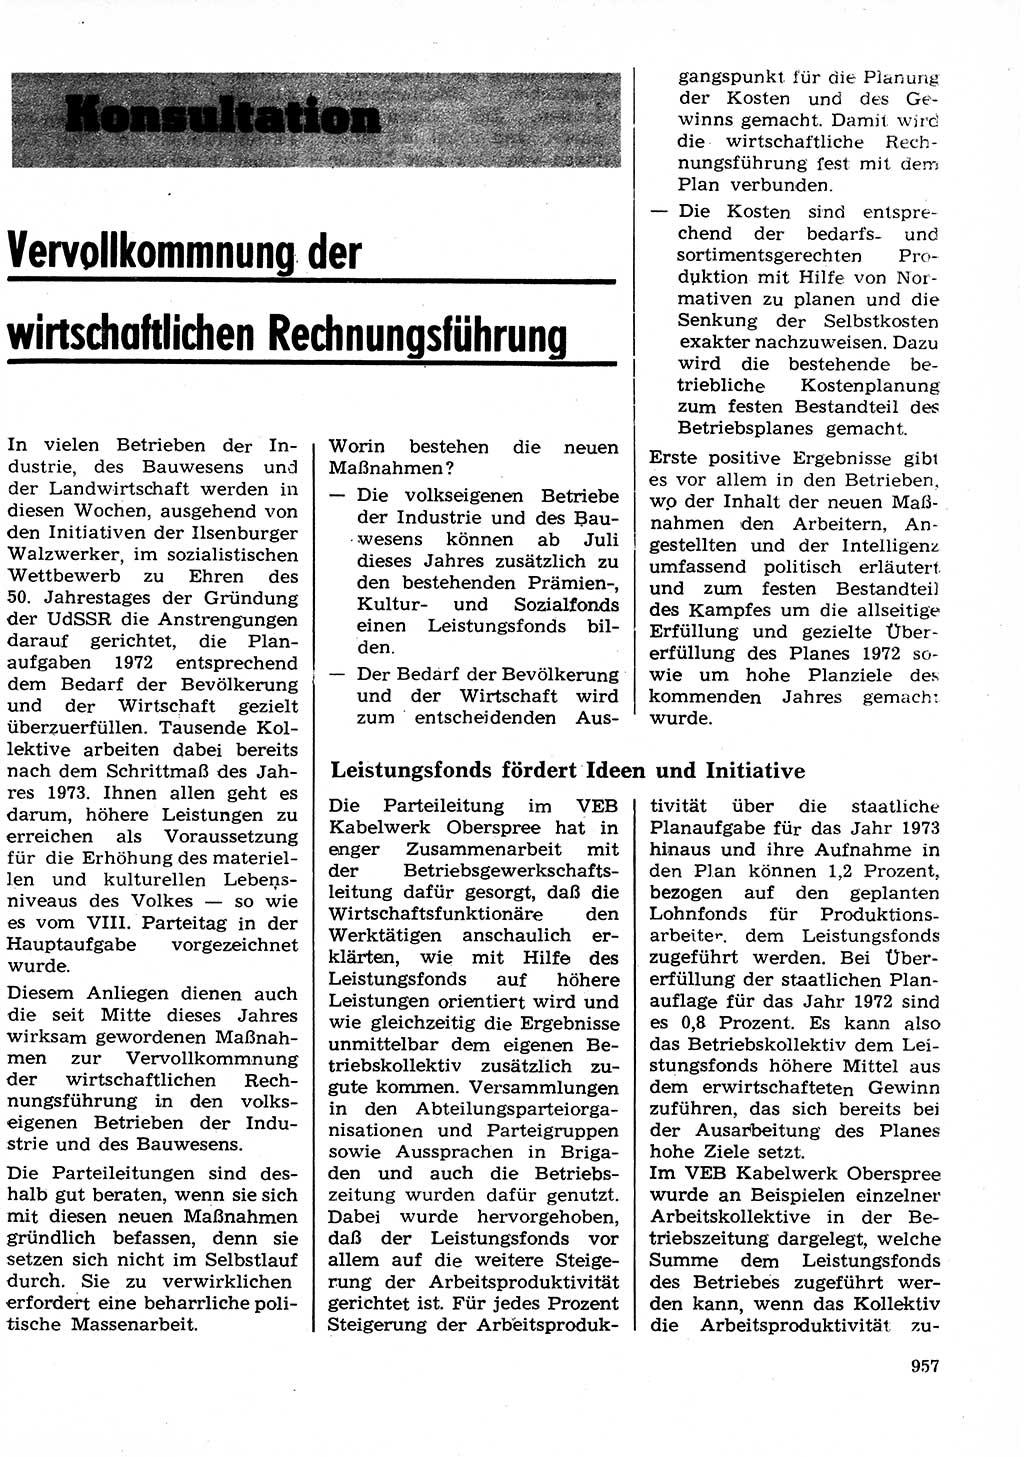 Neuer Weg (NW), Organ des Zentralkomitees (ZK) der SED (Sozialistische Einheitspartei Deutschlands) für Fragen des Parteilebens, 27. Jahrgang [Deutsche Demokratische Republik (DDR)] 1972, Seite 957 (NW ZK SED DDR 1972, S. 957)